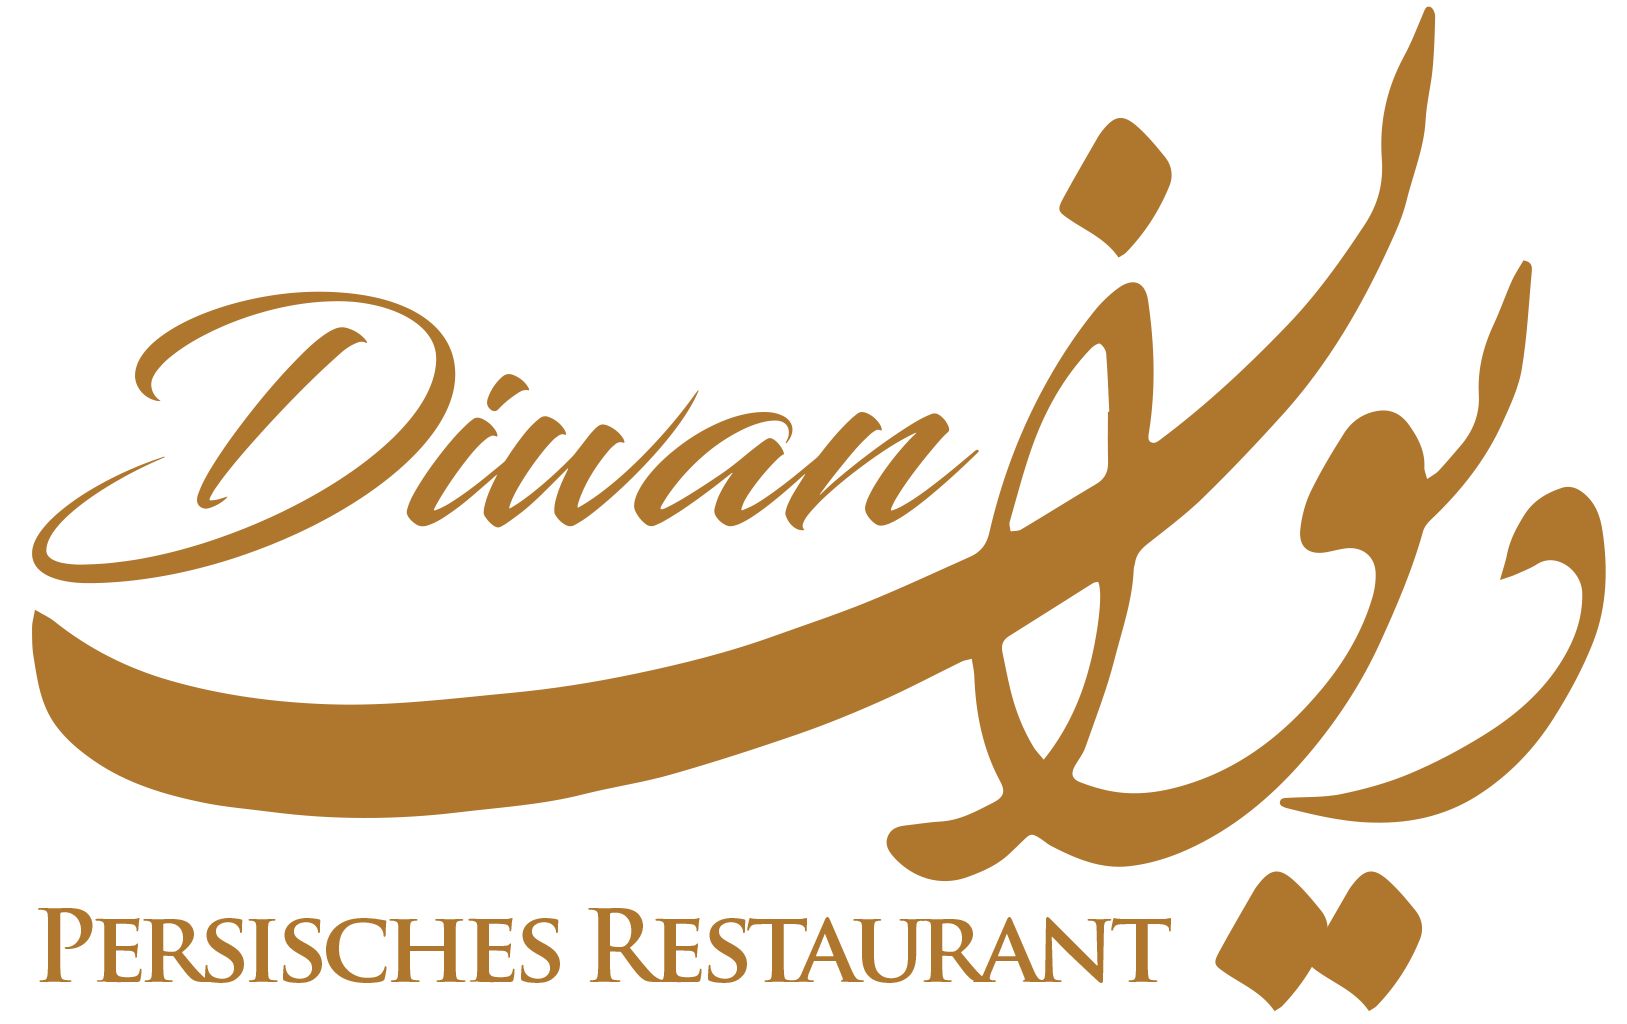 Diwan Restaurant München persische restaurant